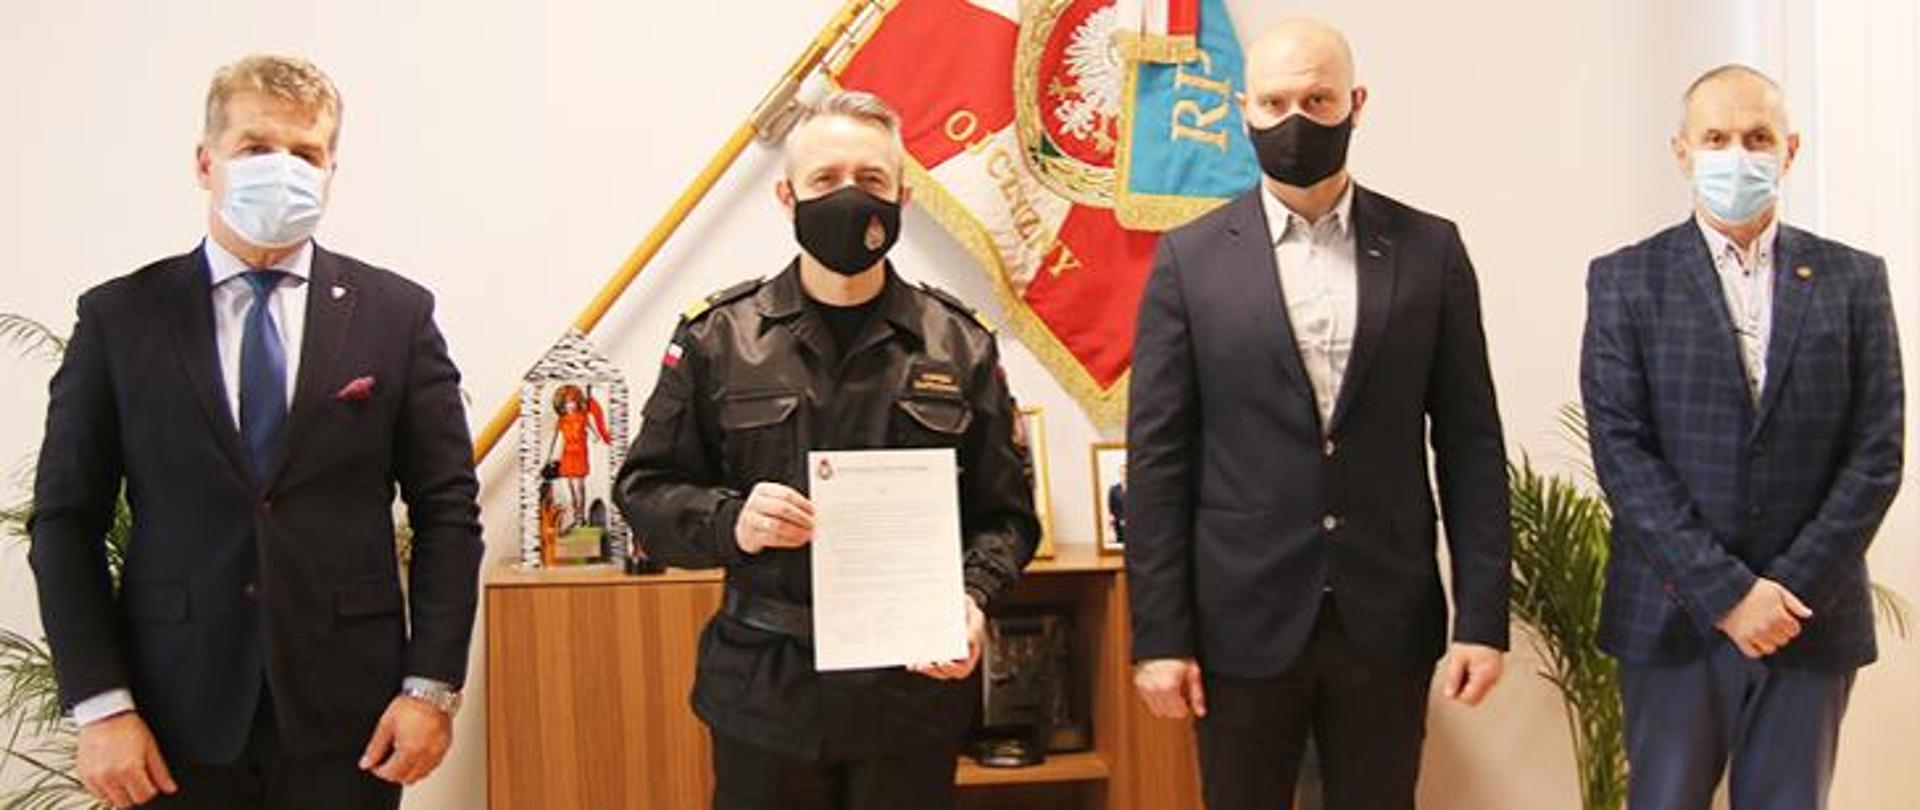 Komendant Główny Państwowej Straży Pożarnej nadbryg. Andrzej Bartkowiak, wraz z przedstawicielami Związków Zawodowych działających w PSP, apelują o oddawanie osocza